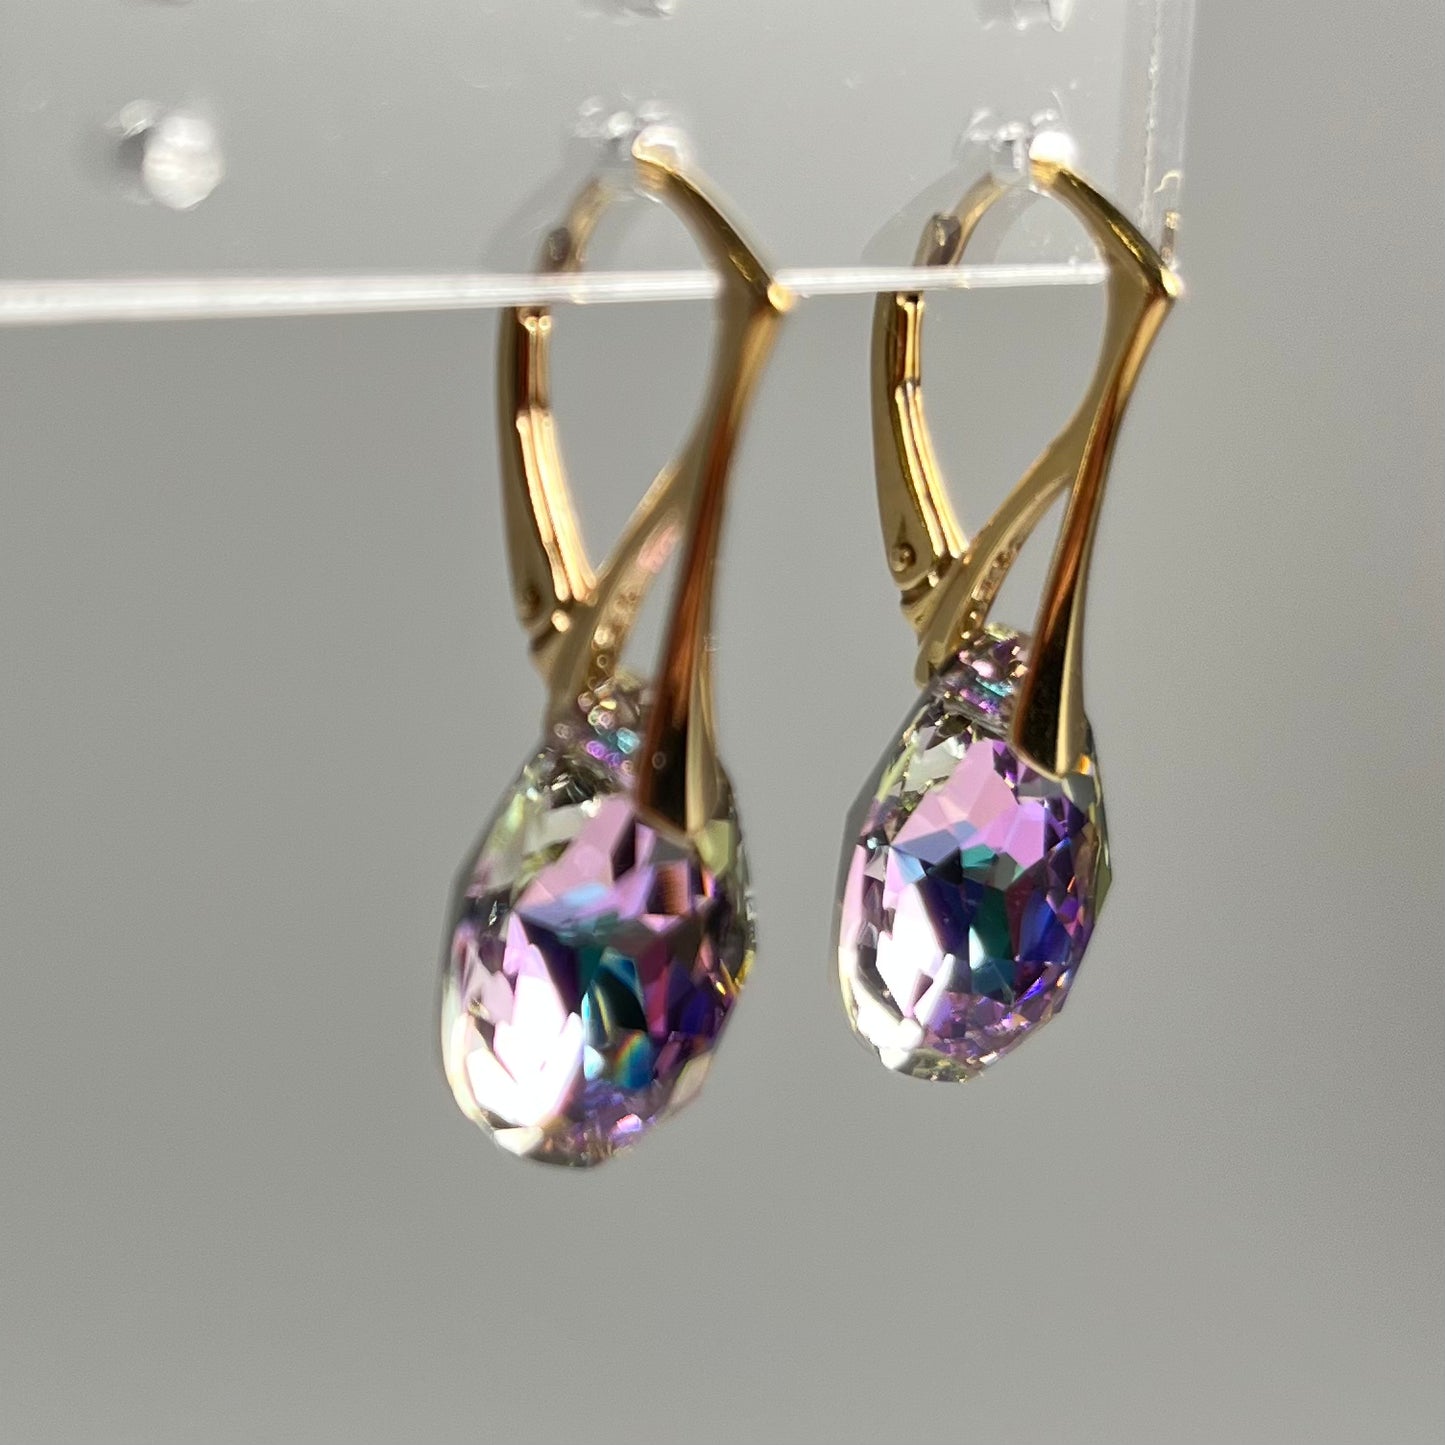 Boucles d'oreilles avec cristaux Swarovski, argent doré, cristal VL, KATE